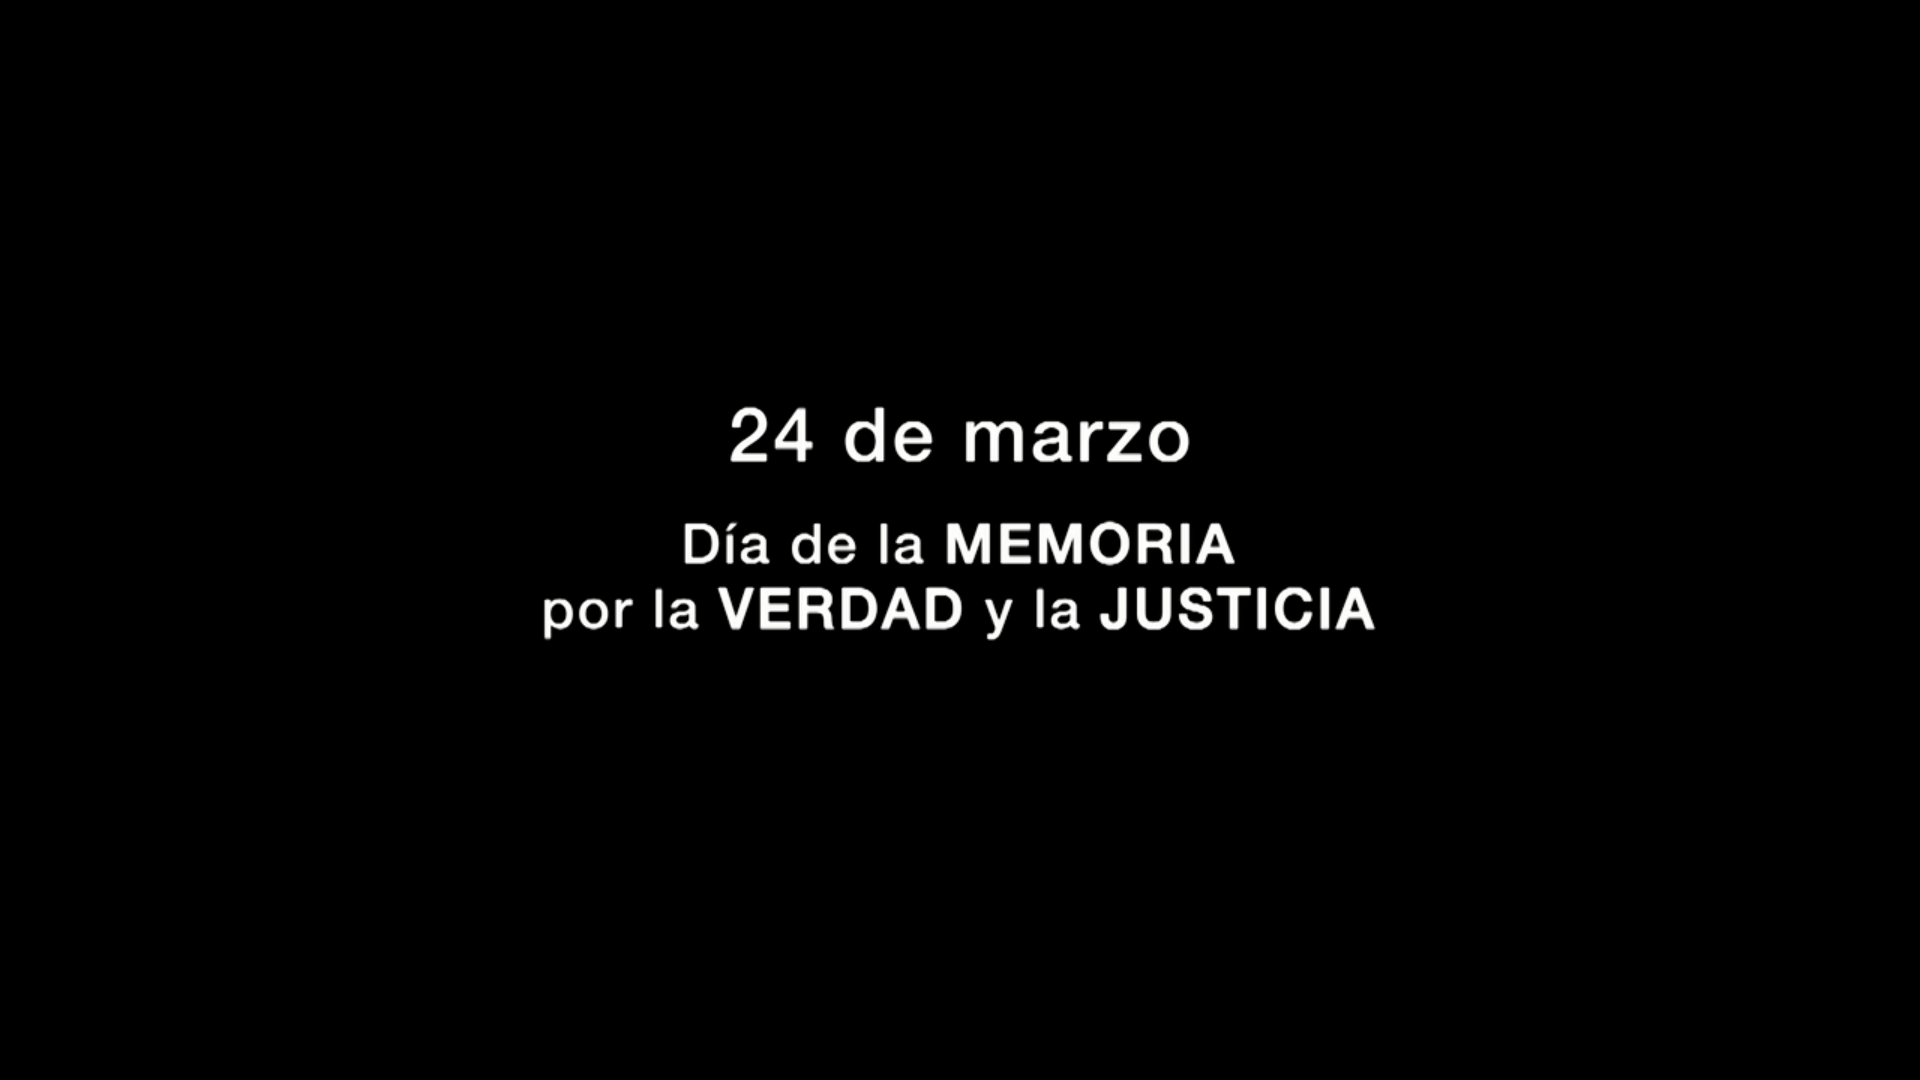 24 DE MARZO - Memoria, Verdad y Justicia